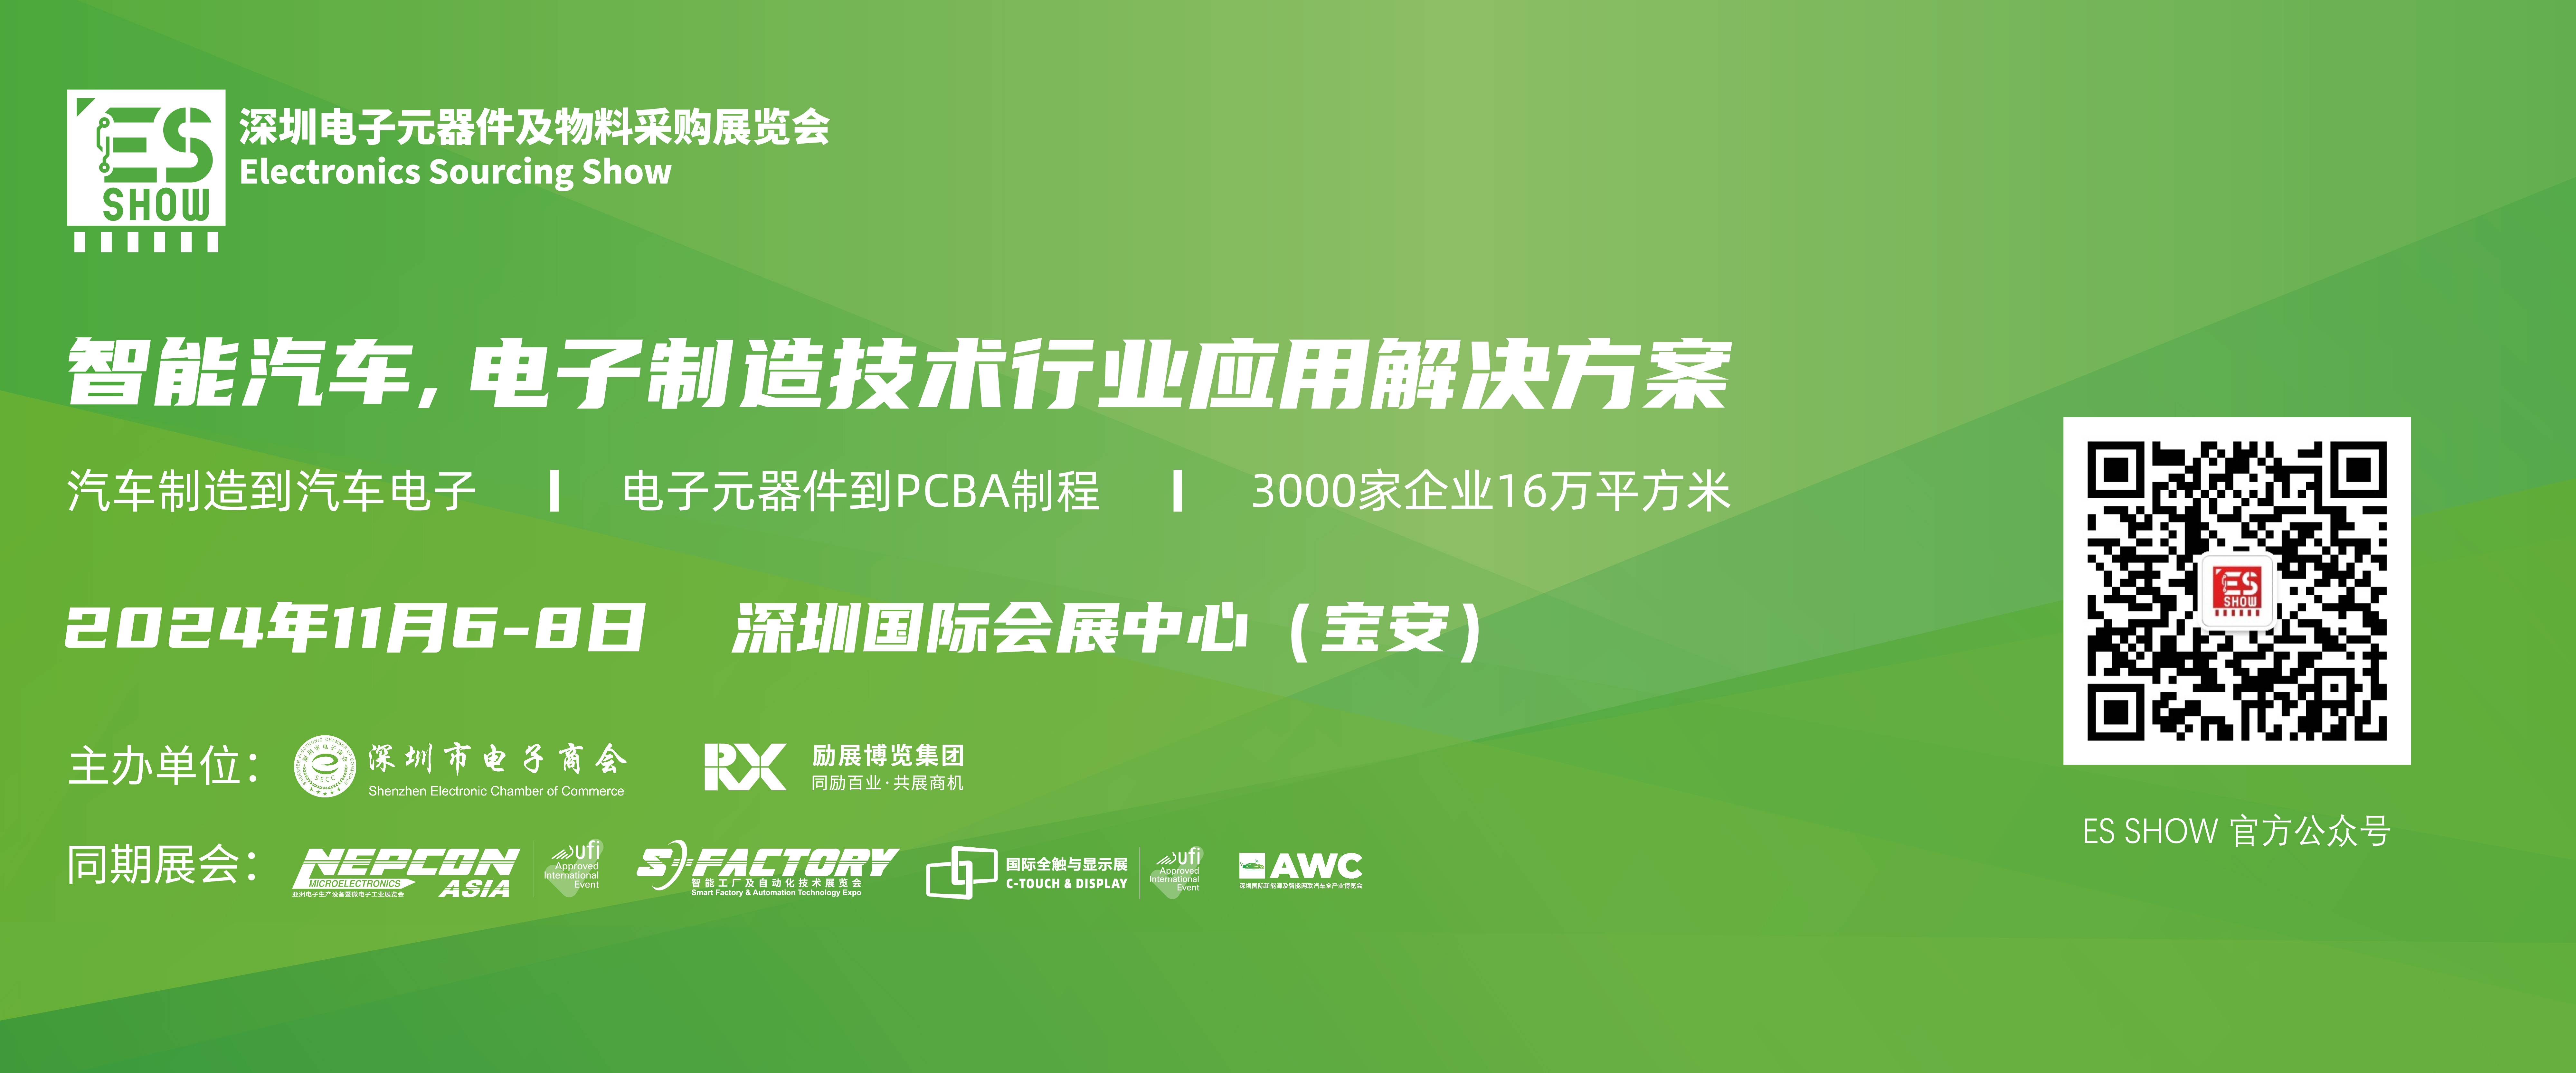 深圳电子展 华南电子展 电池技术 电动汽车 锂电池